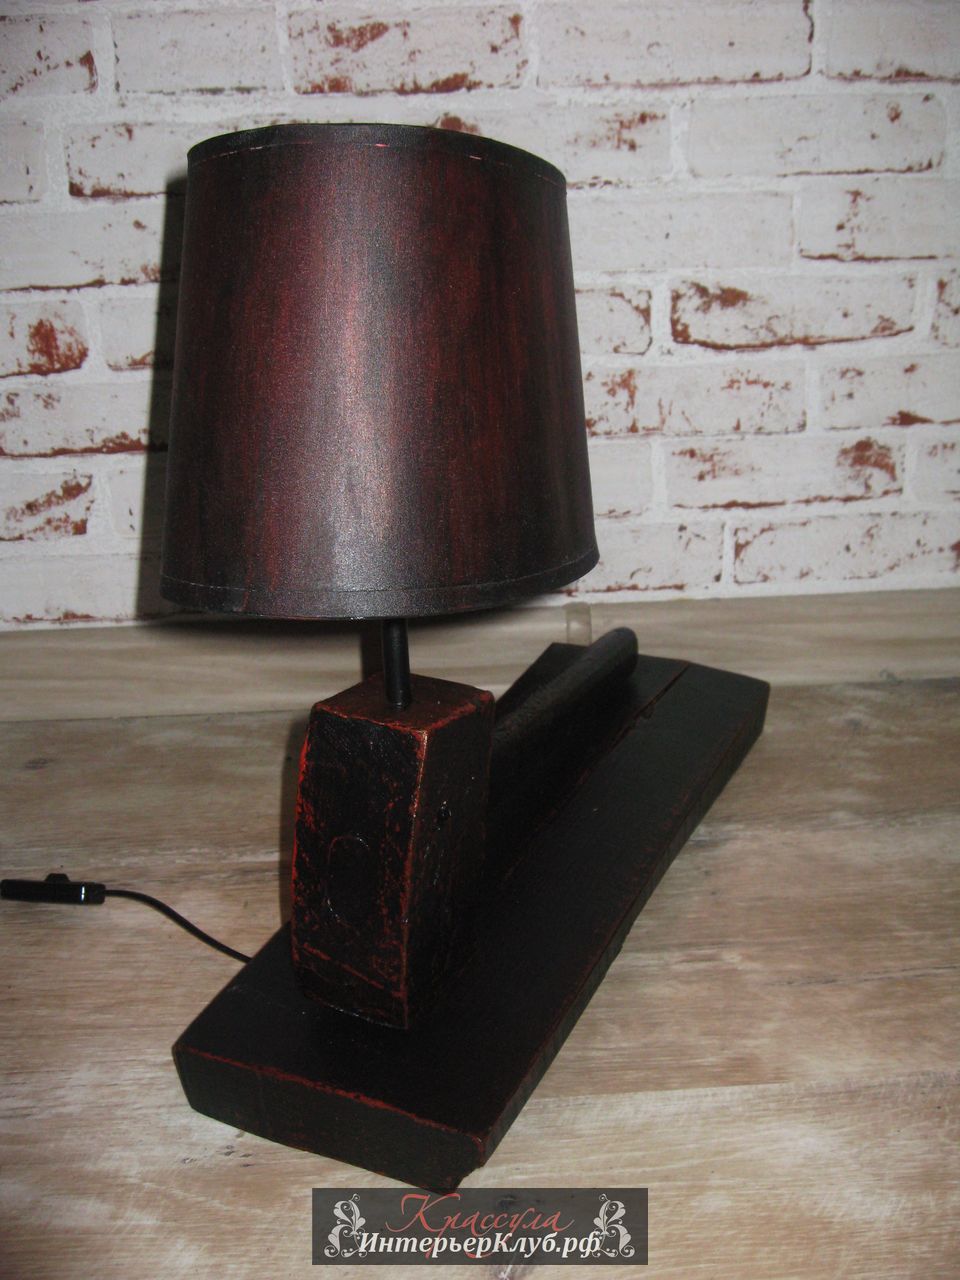 53 Настольный светильник  Тор - натуральное дерево, основной цвет черный с проблесками красного.  Эксклюзивные светильники ручной работы, авторские светильники ручной работы